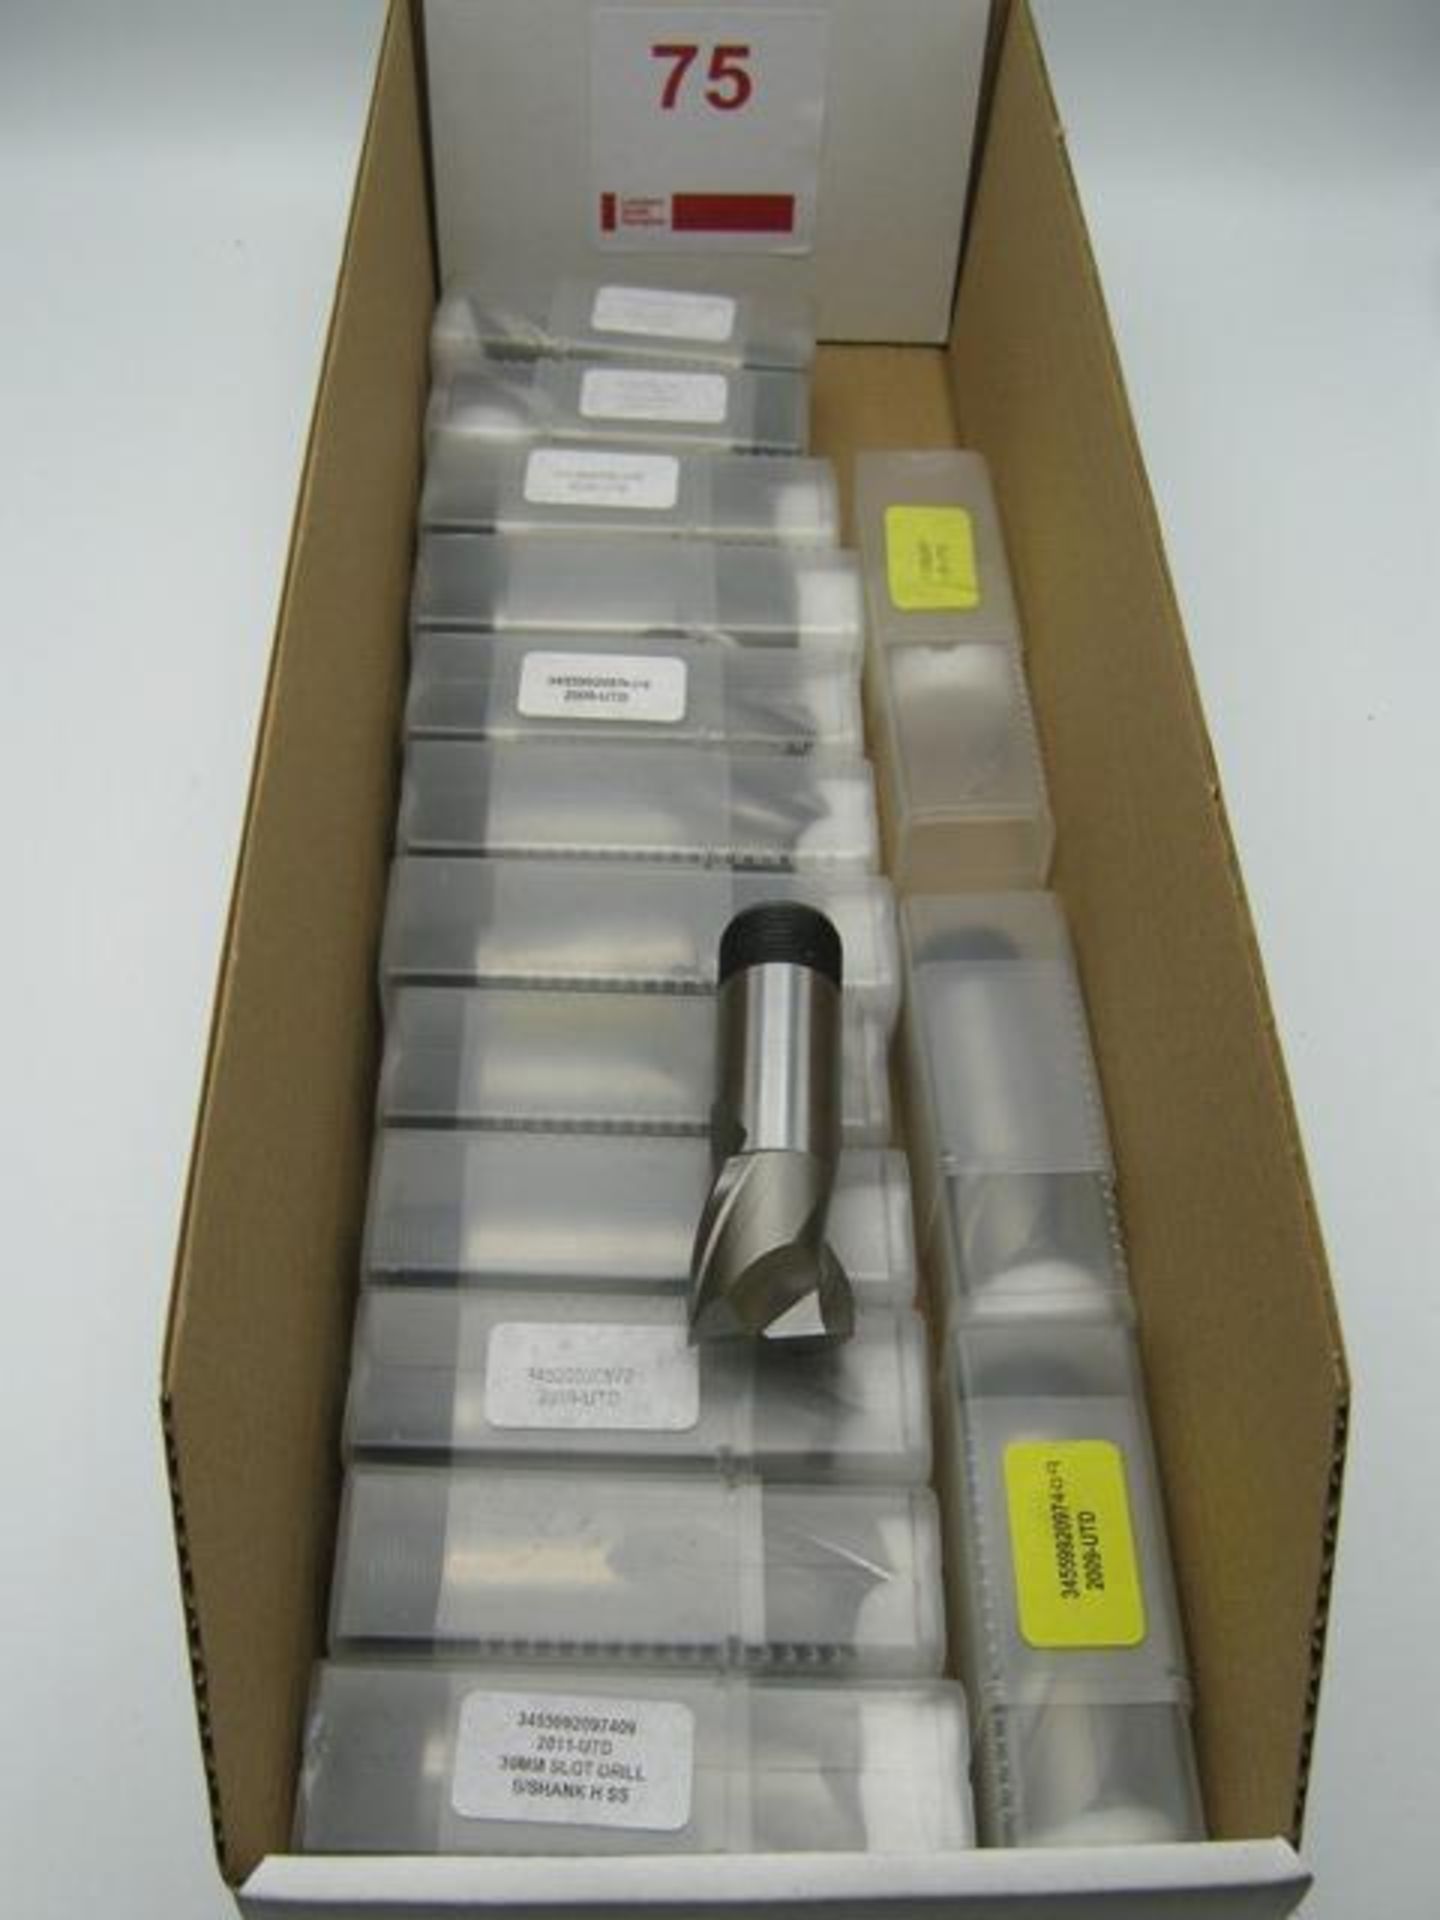 15 x 30mm screw shank HSS slot drills, unused